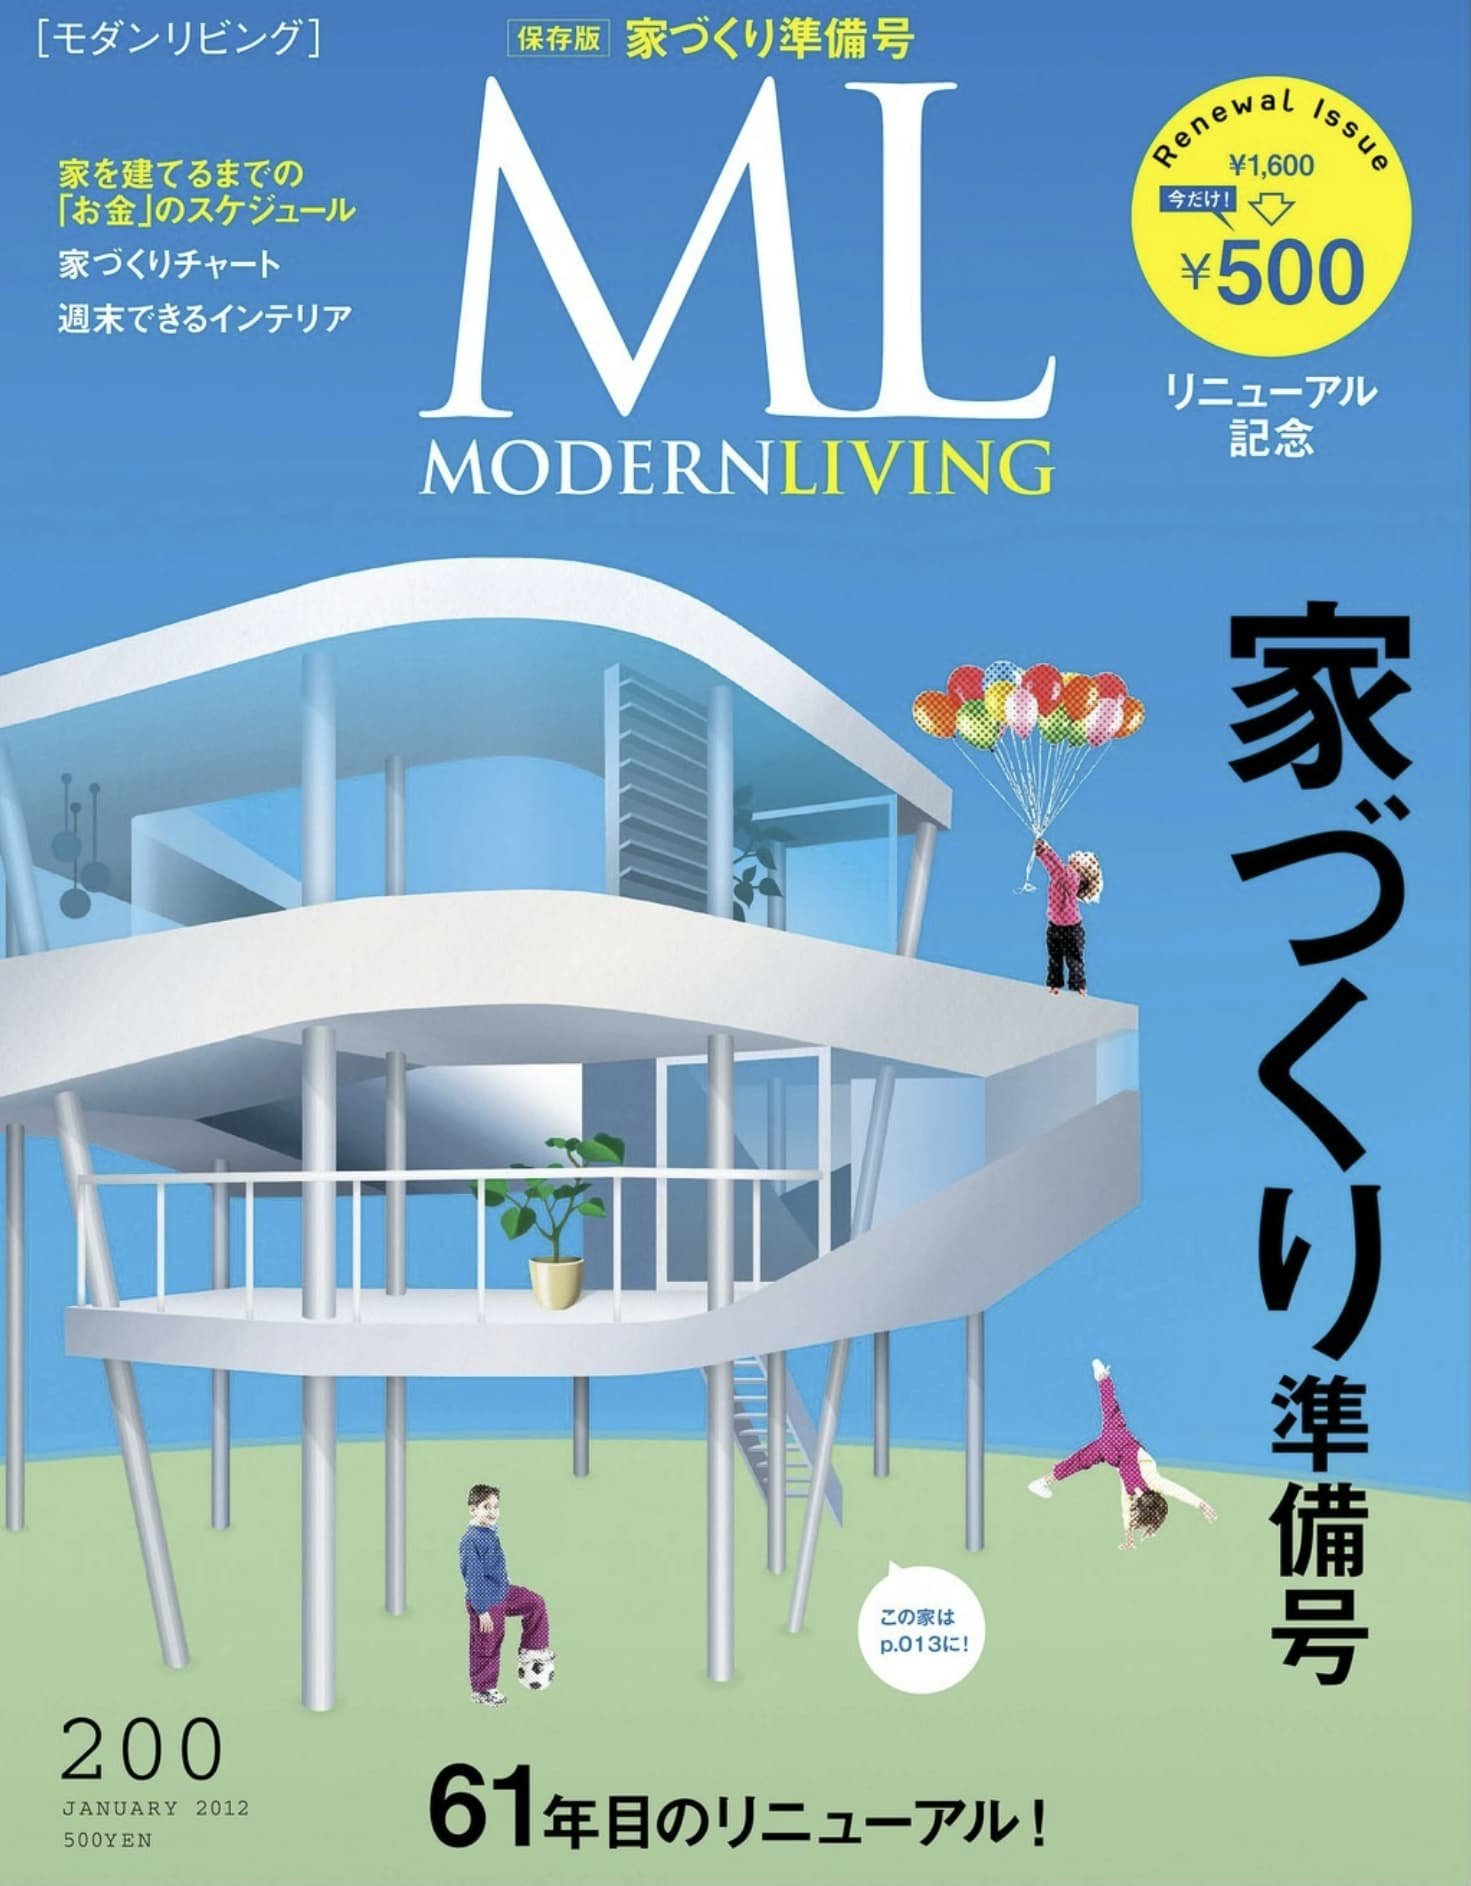 モダンリビング -  Modern Living 200 - Front.jpg